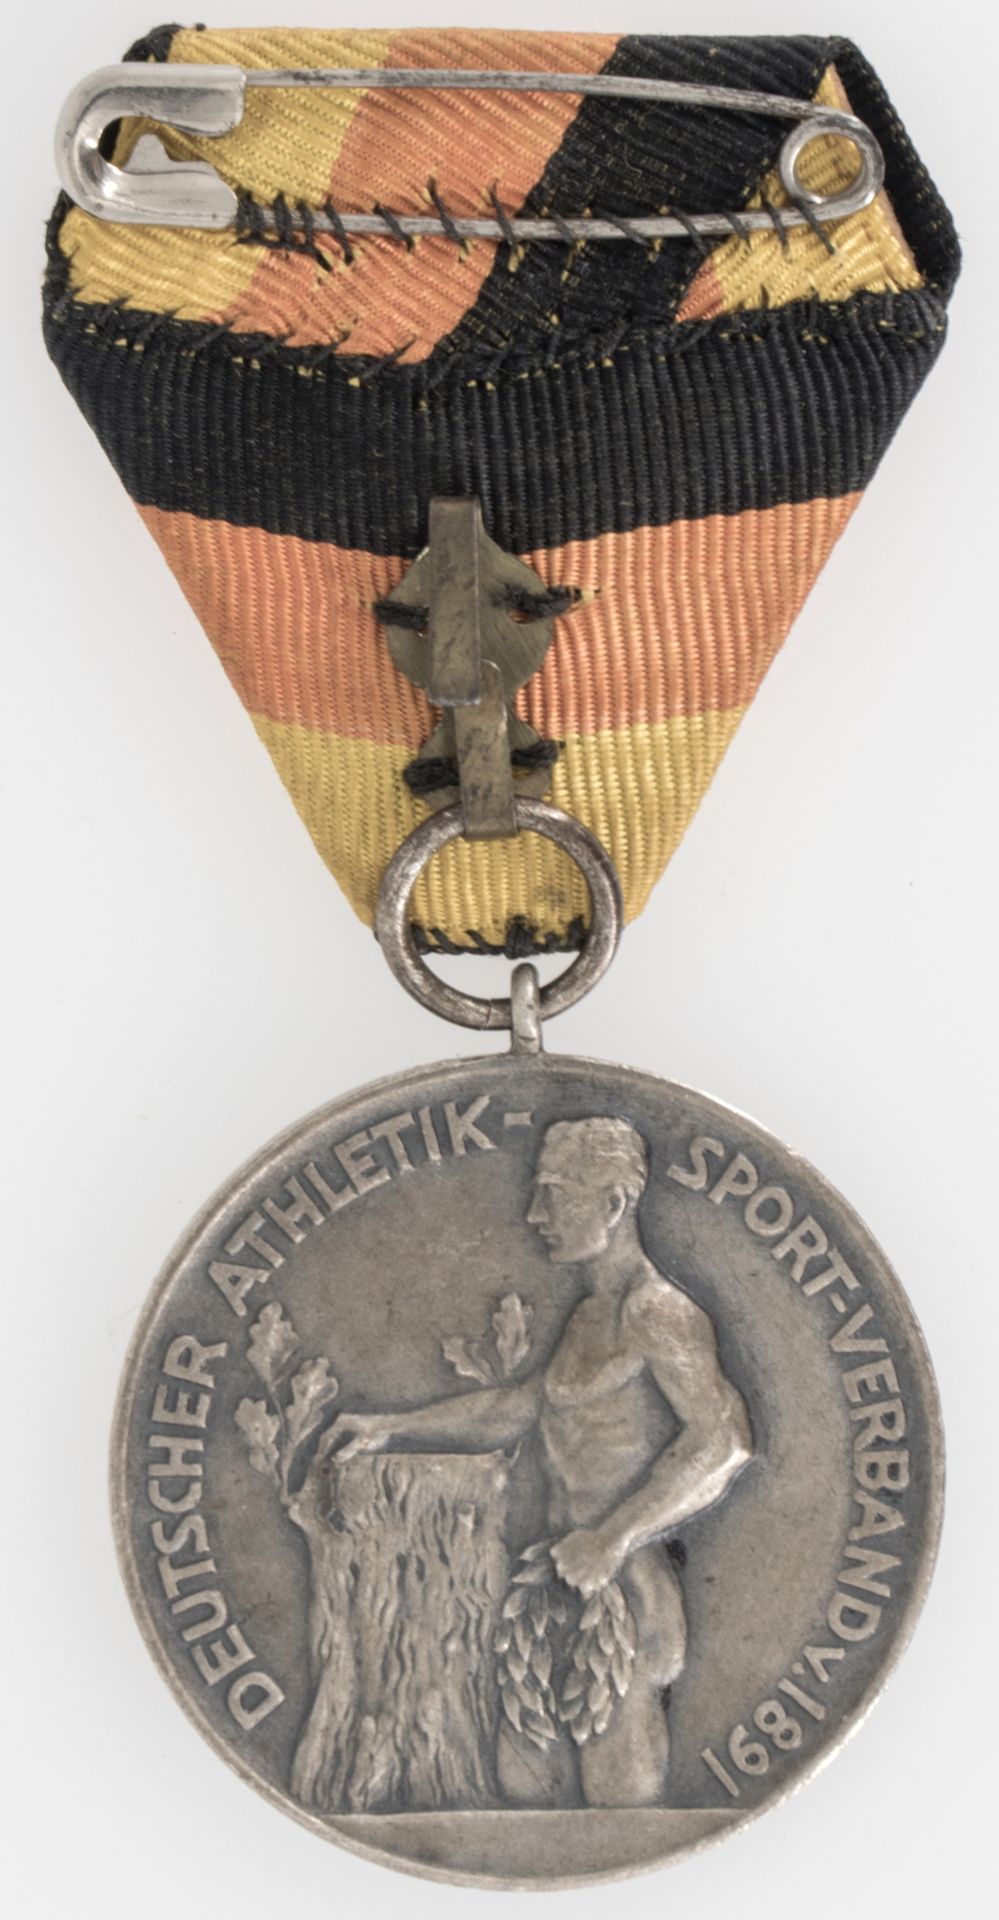 Tragbare Medaille am Band, Gaufest 1930 Nendingen a./D. des DASV. - Bild 2 aus 2